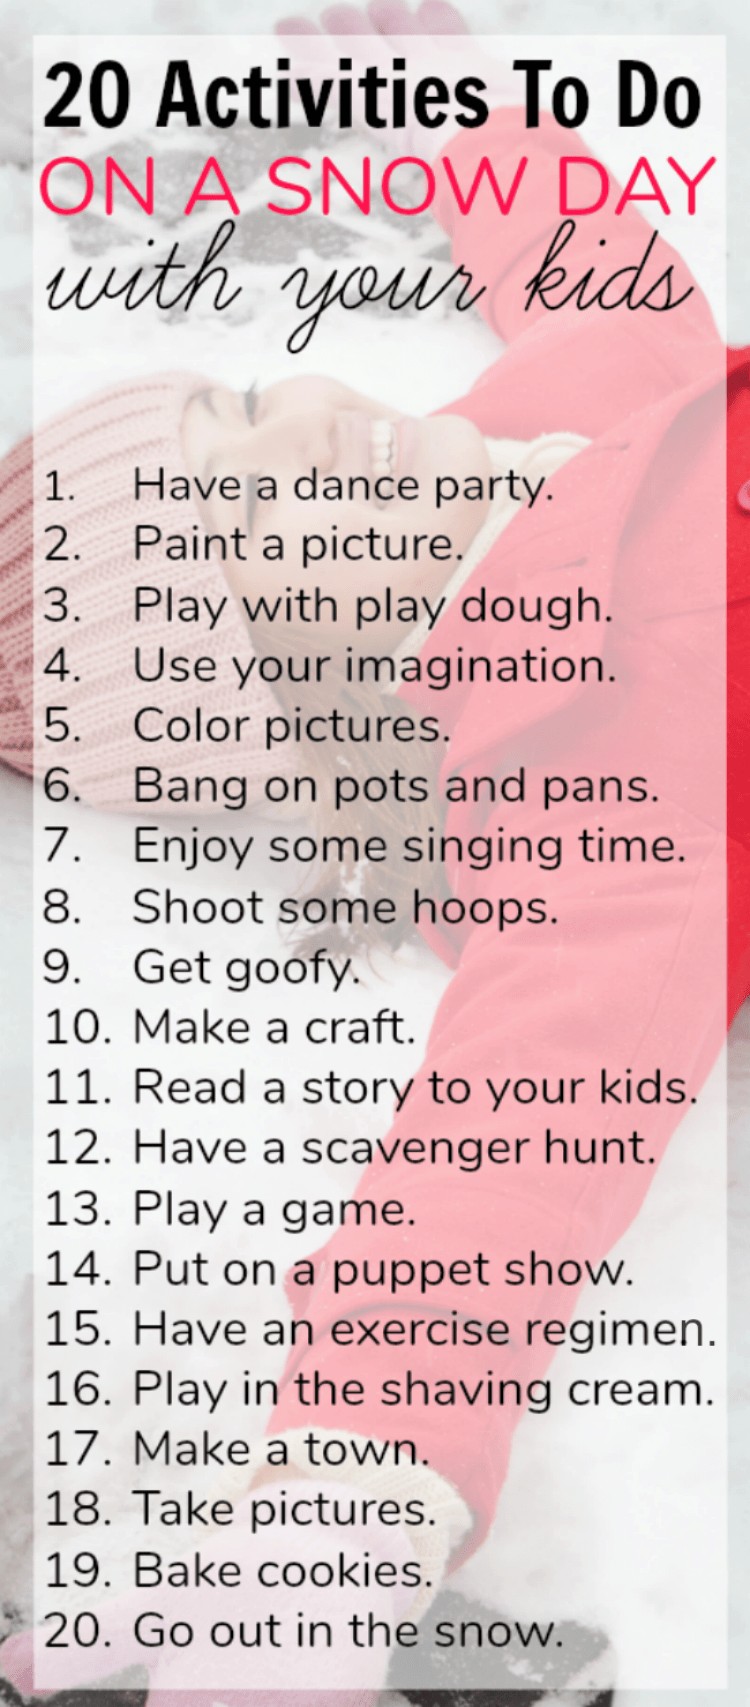 તમારા બાળકો સાથે કરવા માટે 20 મનોરંજક ઇન્ડોર સ્નો ડે પ્રવૃત્તિઓ